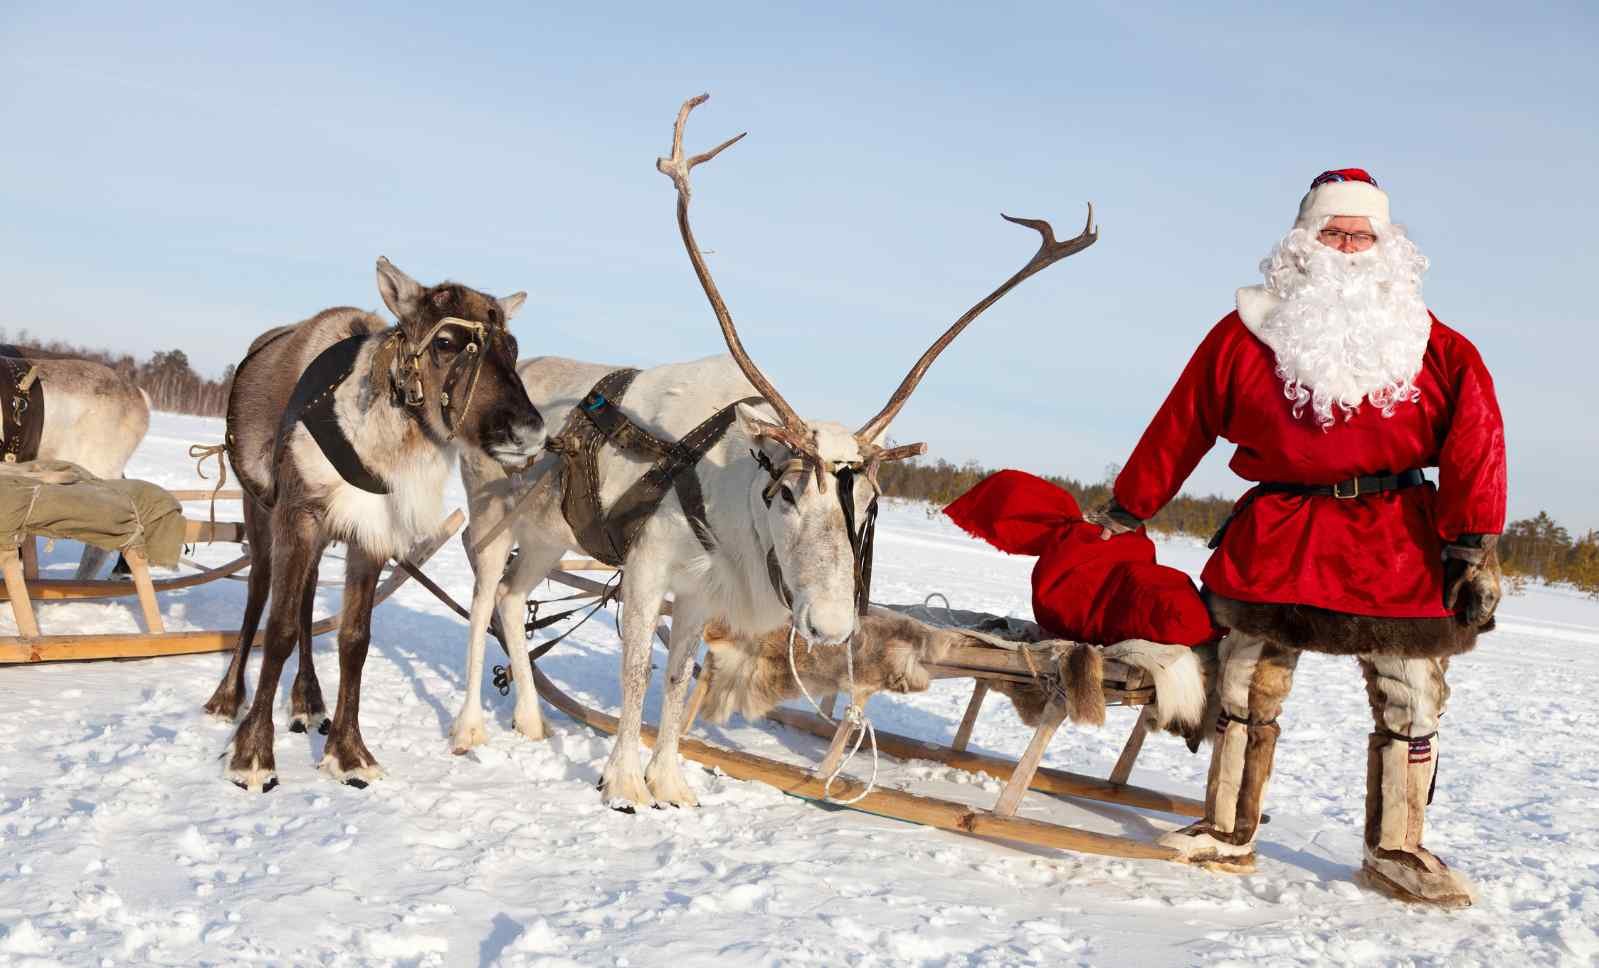 What species are Santa's reindeer?